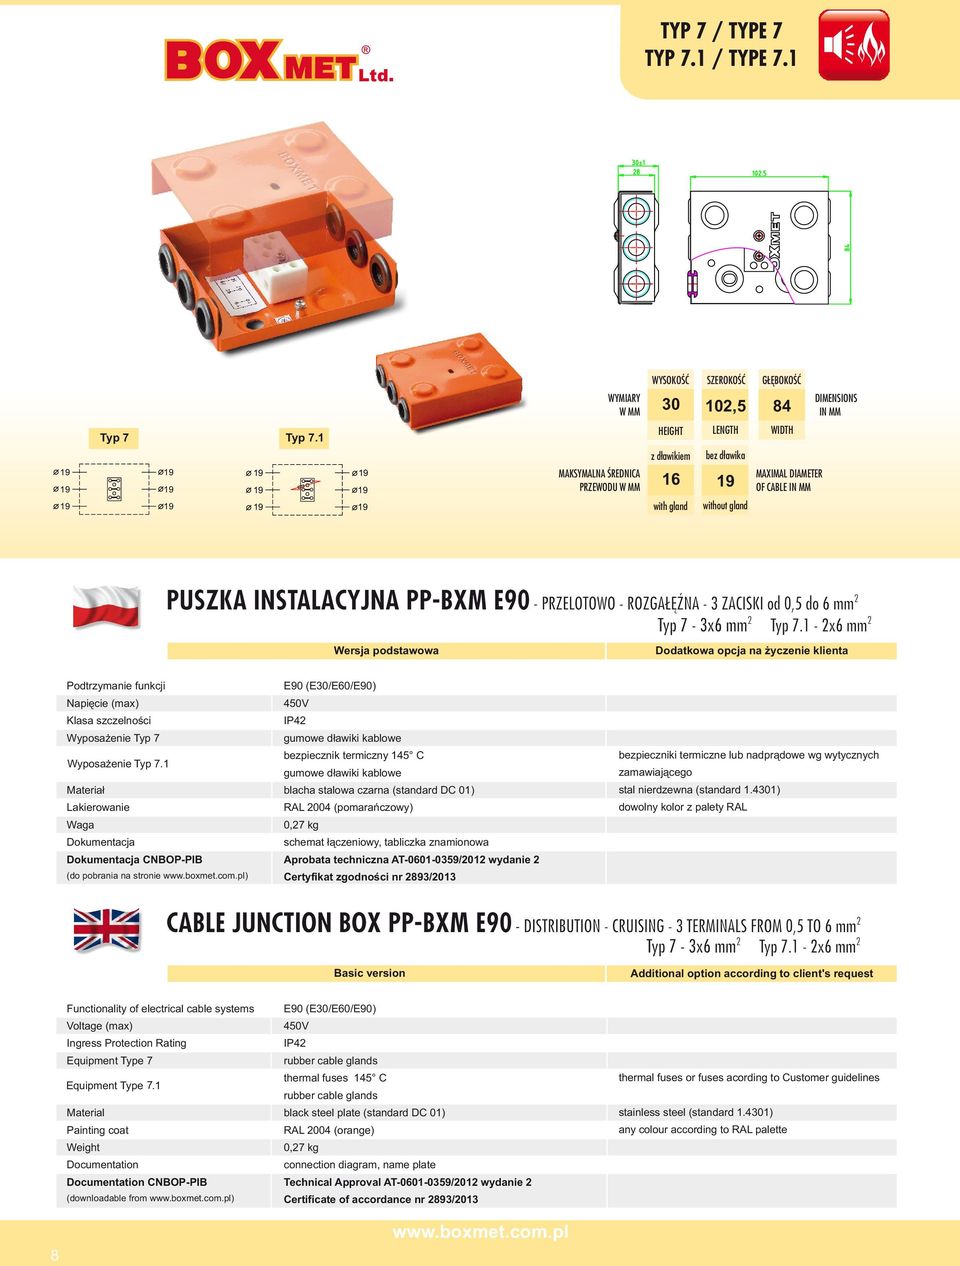 1 (do pobrania na stronie ) IP4 RAL 004 (pomarańczowy) 0,7 kg Aprobata techniczna AT-0601-0359/01 wydanie Certyfikat zgodności nr 93/013 CABLE JUNCTION BOX PP-BXM E90 -